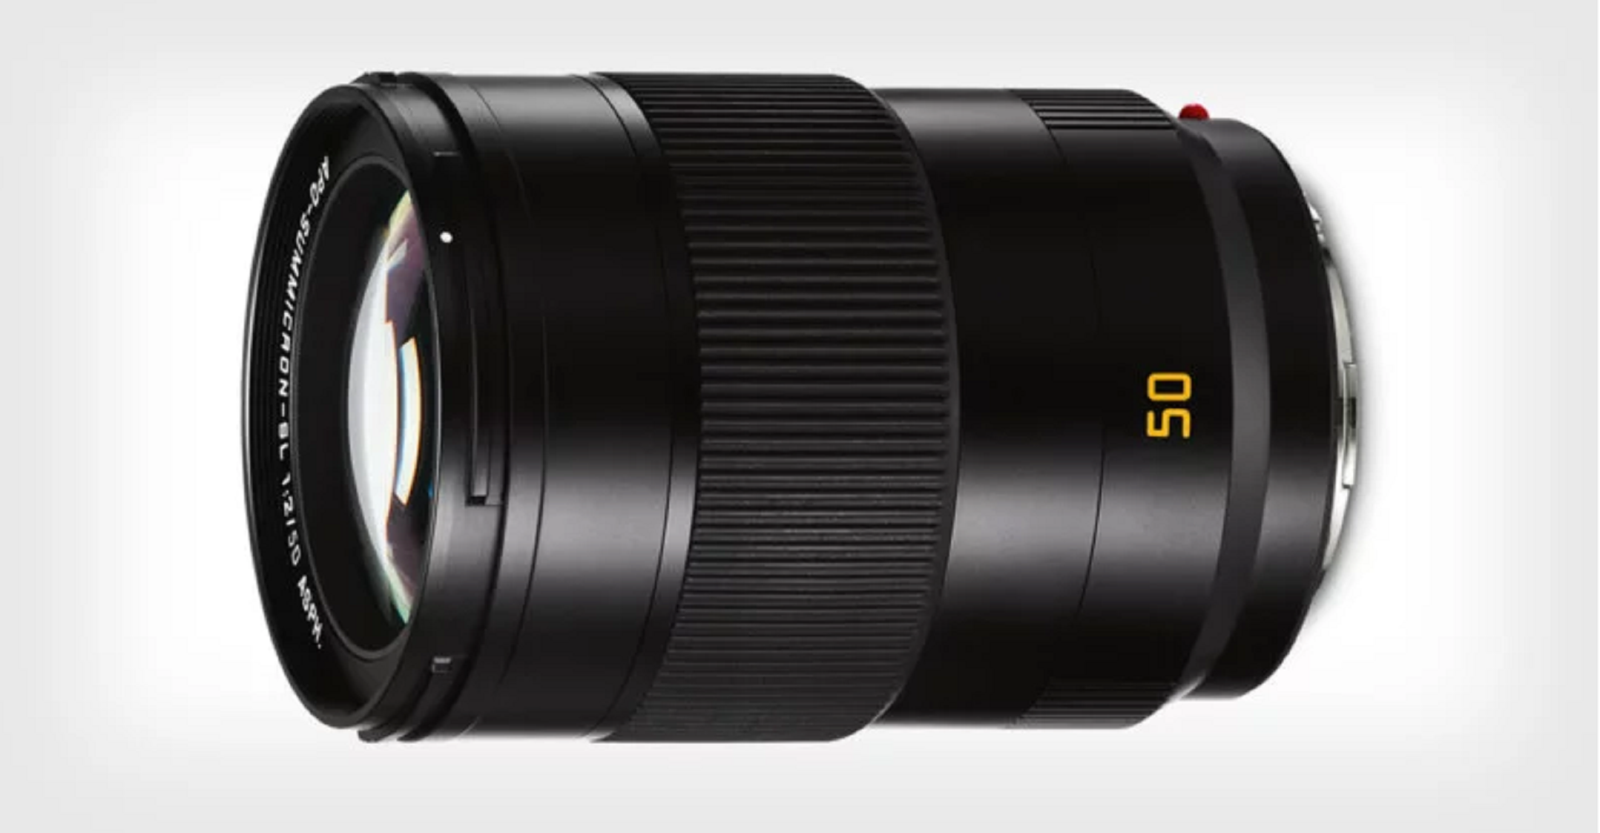 Leica ra mắt ống kính APO-Summicron-SL 50mm F2 ASPH ngàm L